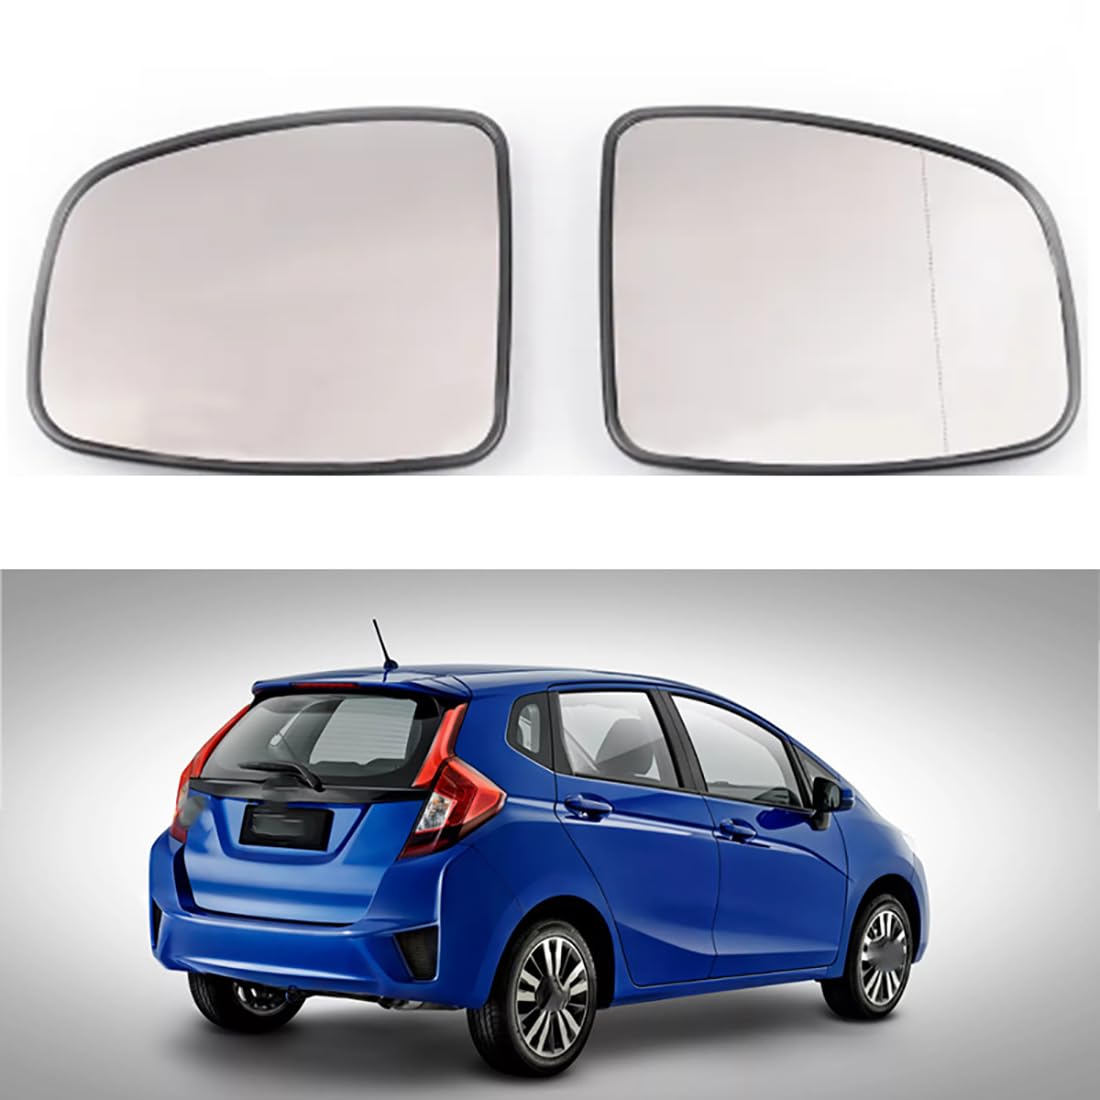 Austauschbarer Auto-Außenspiegel aus Beheizbarem Glas für H-ONDA FIT JAZZ CITY 2014-2020,beheizbarer Rückspiegel für Fahrer und Beifahrer Links/rechts,A-Left von YujieNB